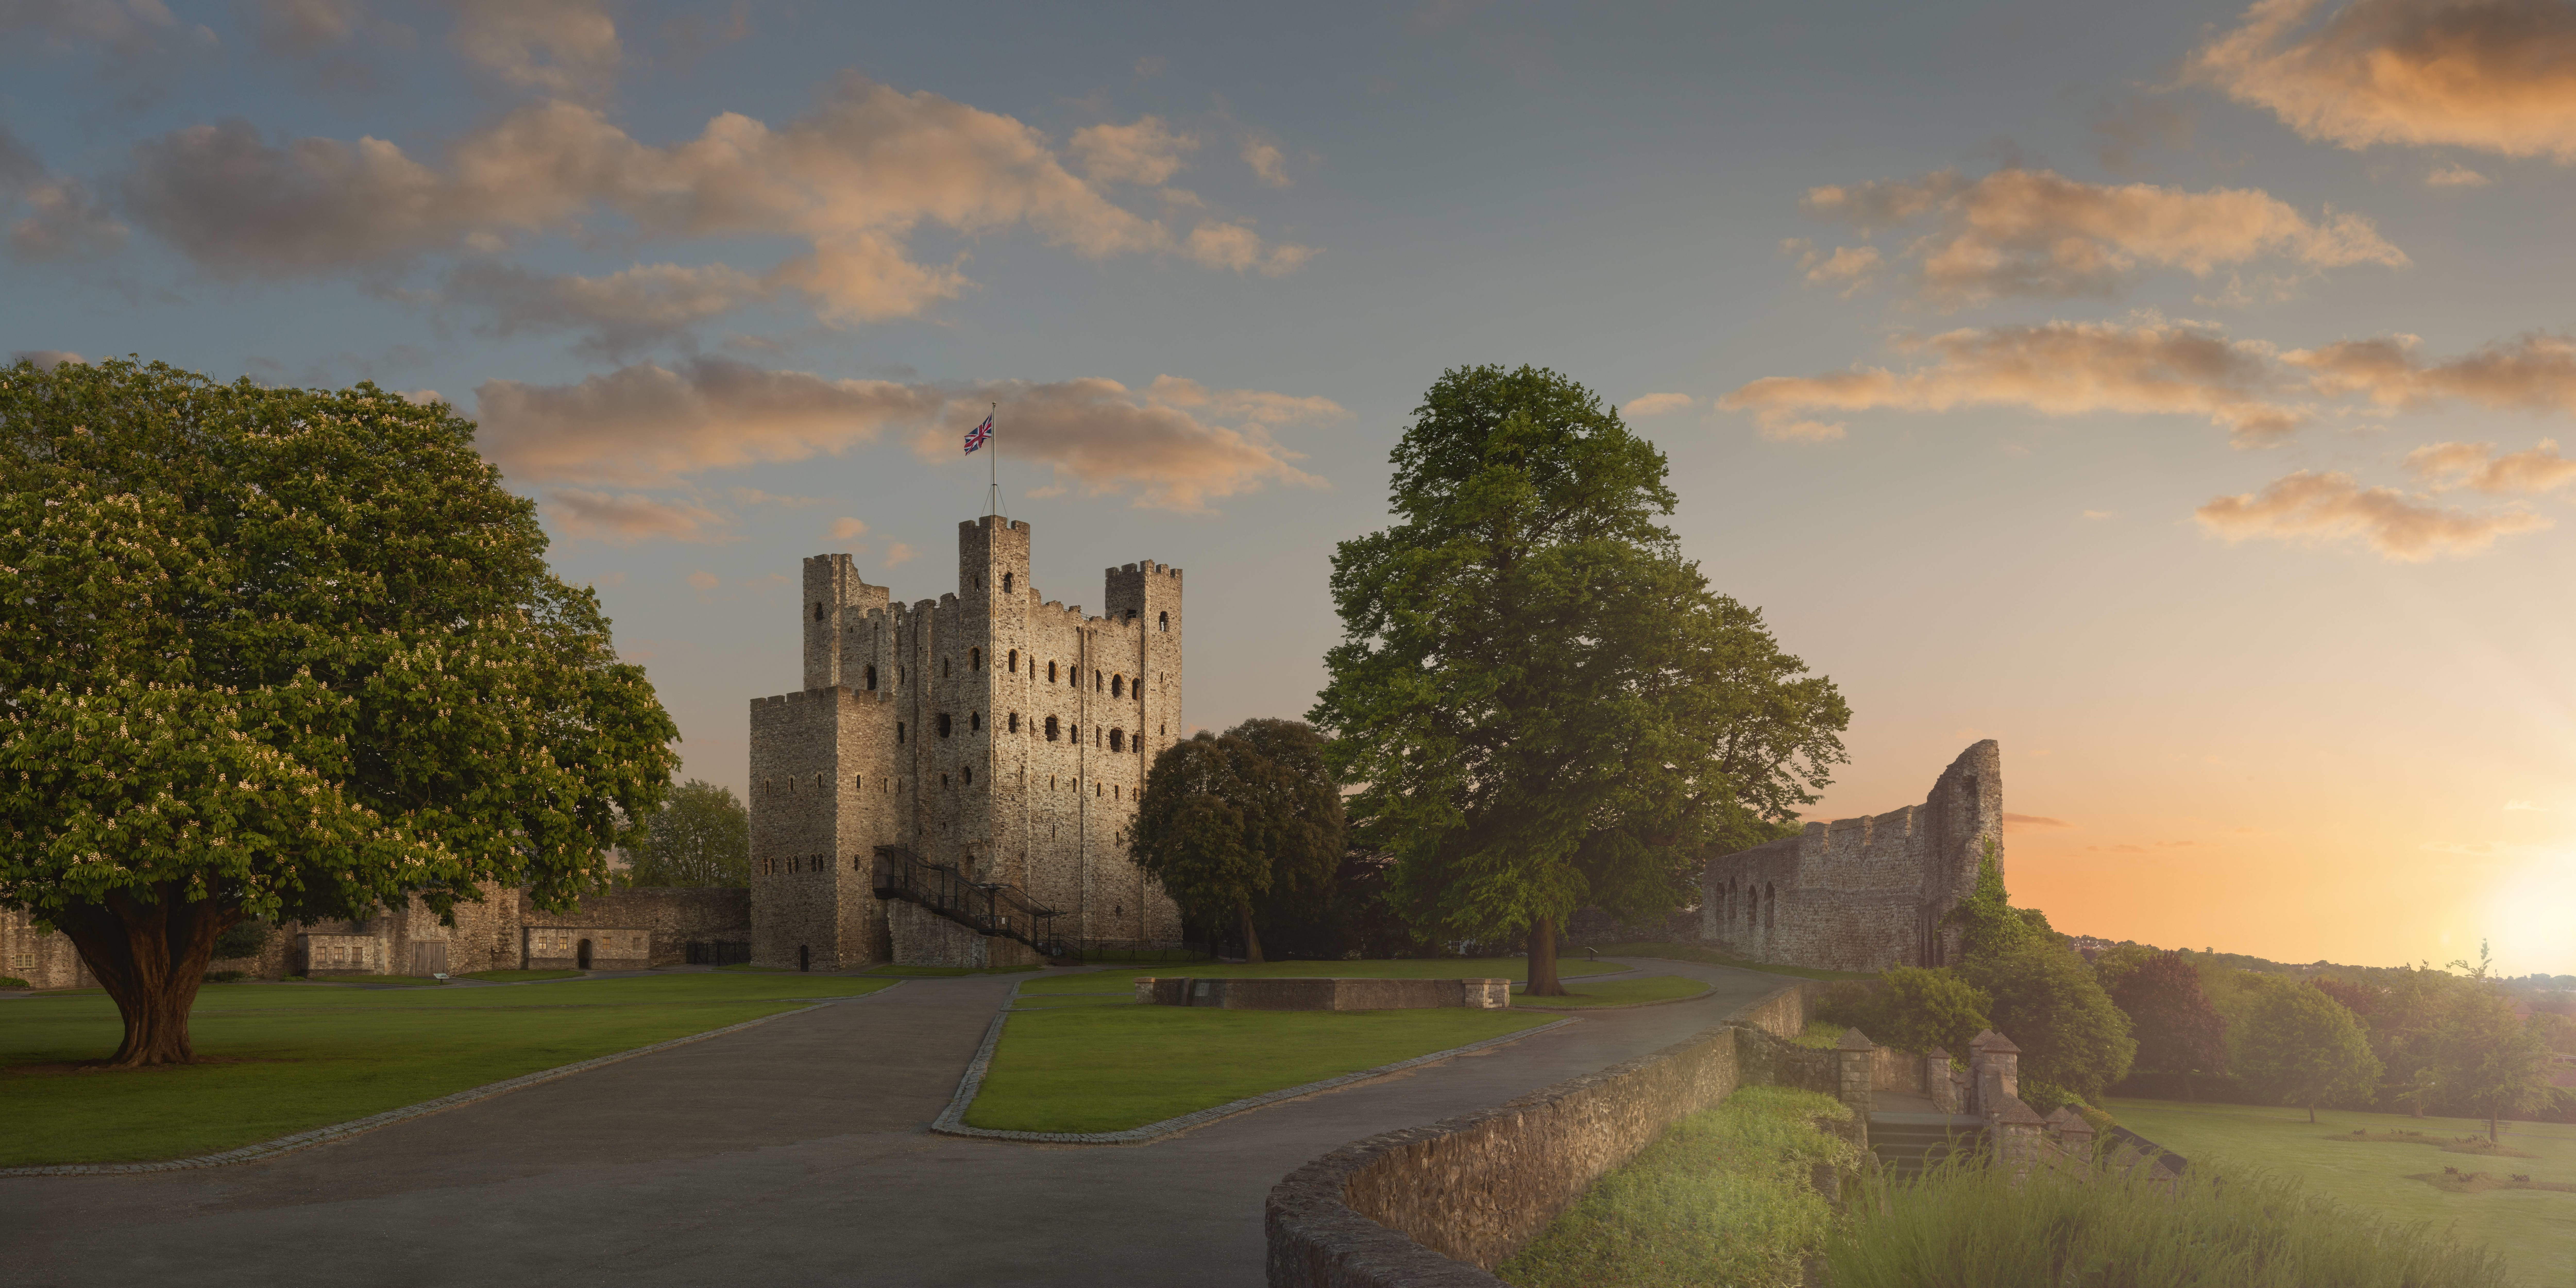 Castles in Kent